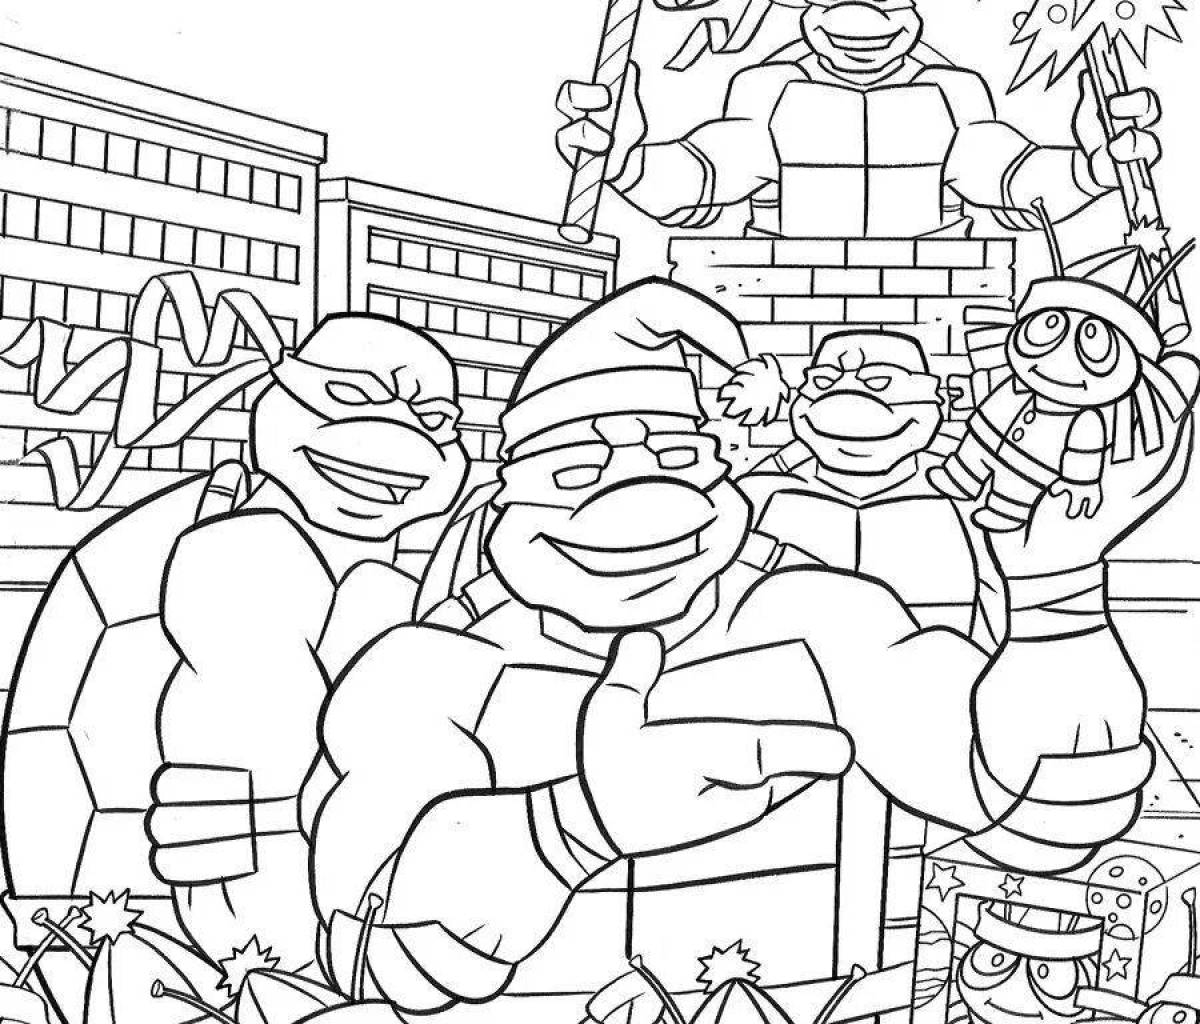 Teenage Mutant Ninja Turtles creative drawing